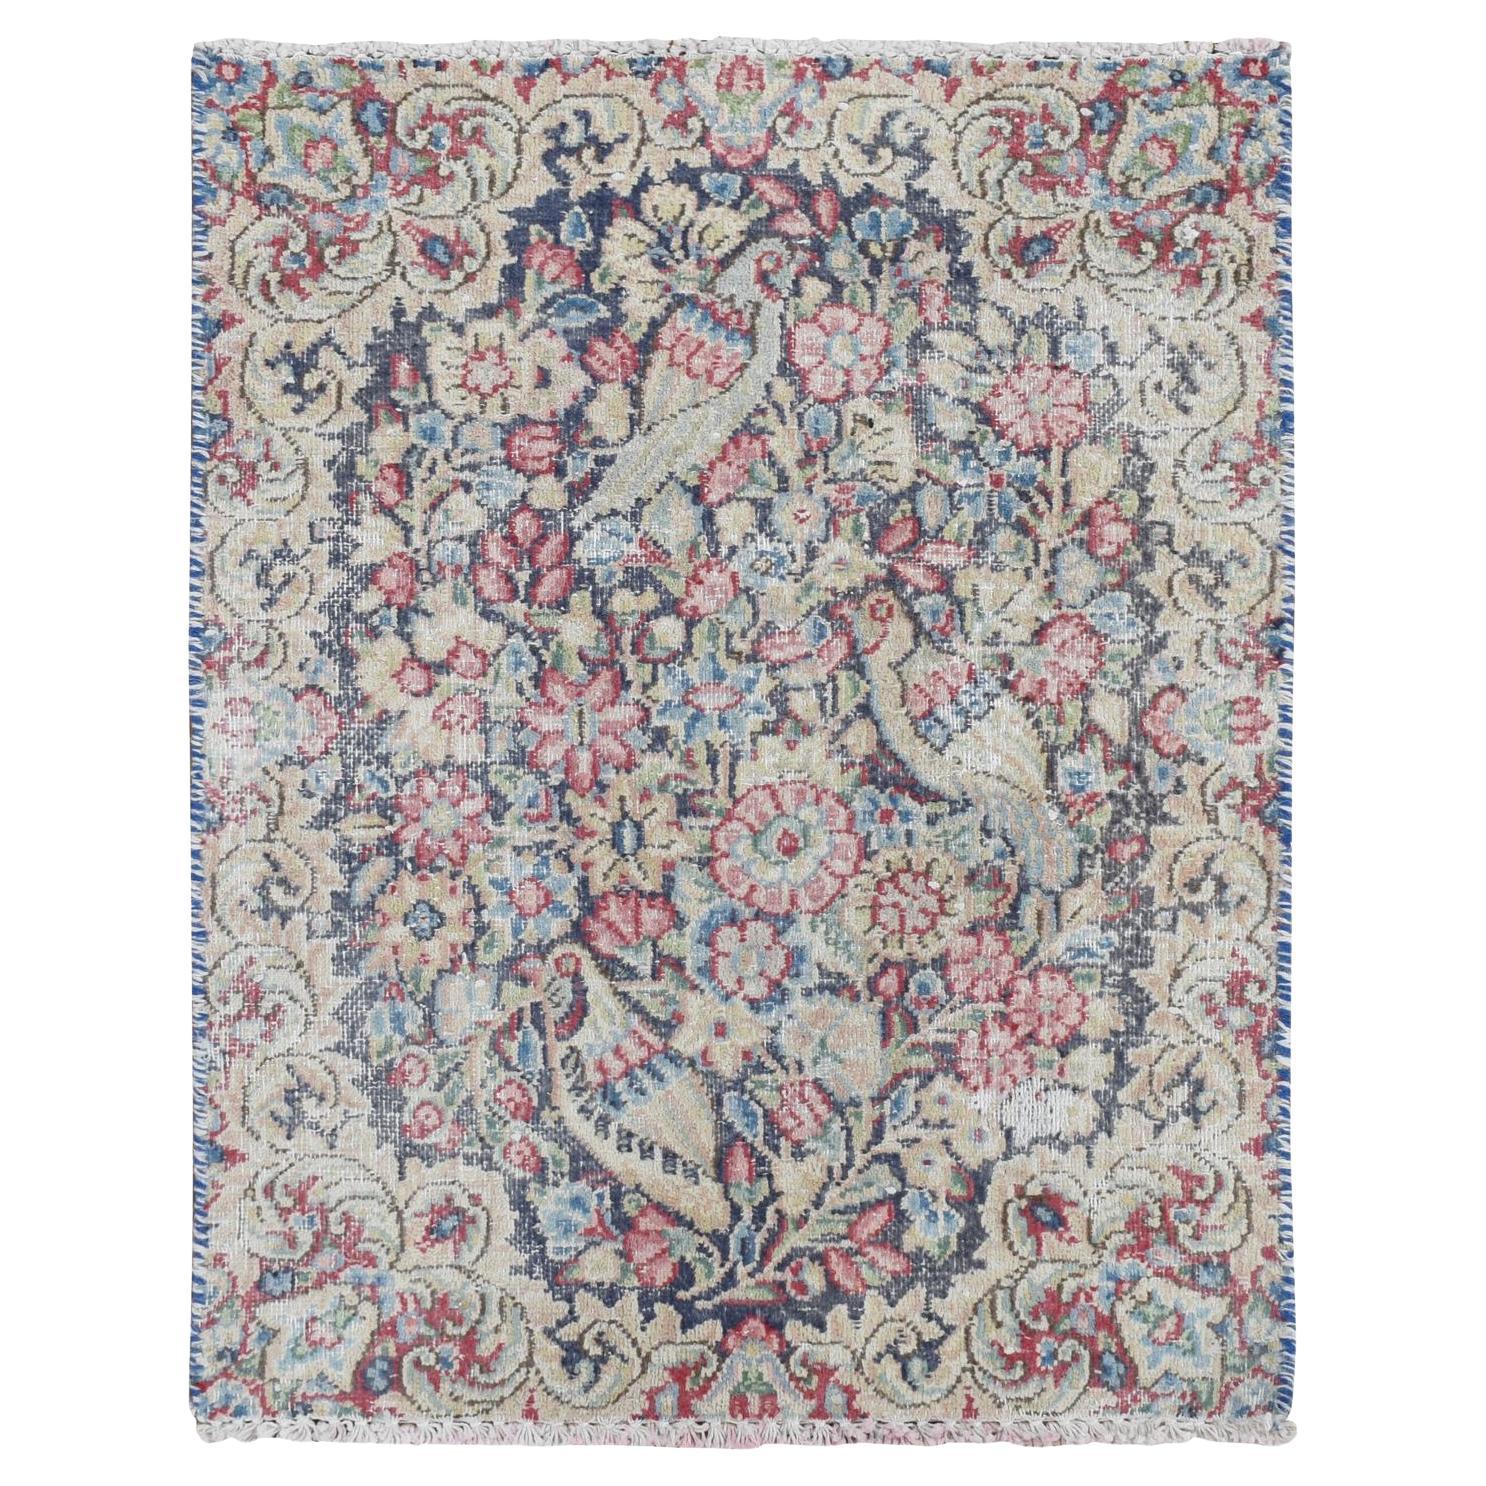 Blauer, handgeknüpfter, persischer Kerman-Teppich aus reiner Wolle, Vintage und getragen, 1'6"x2'